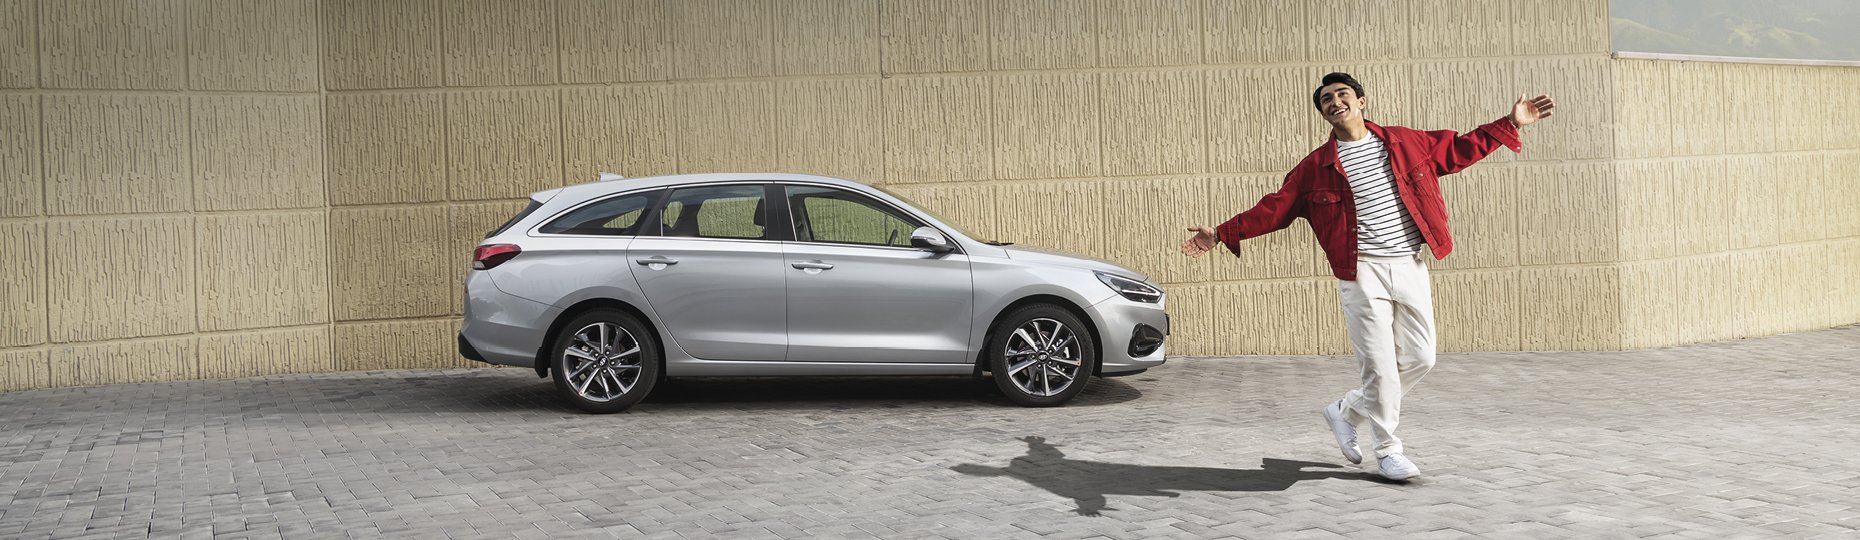 Безопасность новой Hyundai i30 | Официальный дилер в Астане